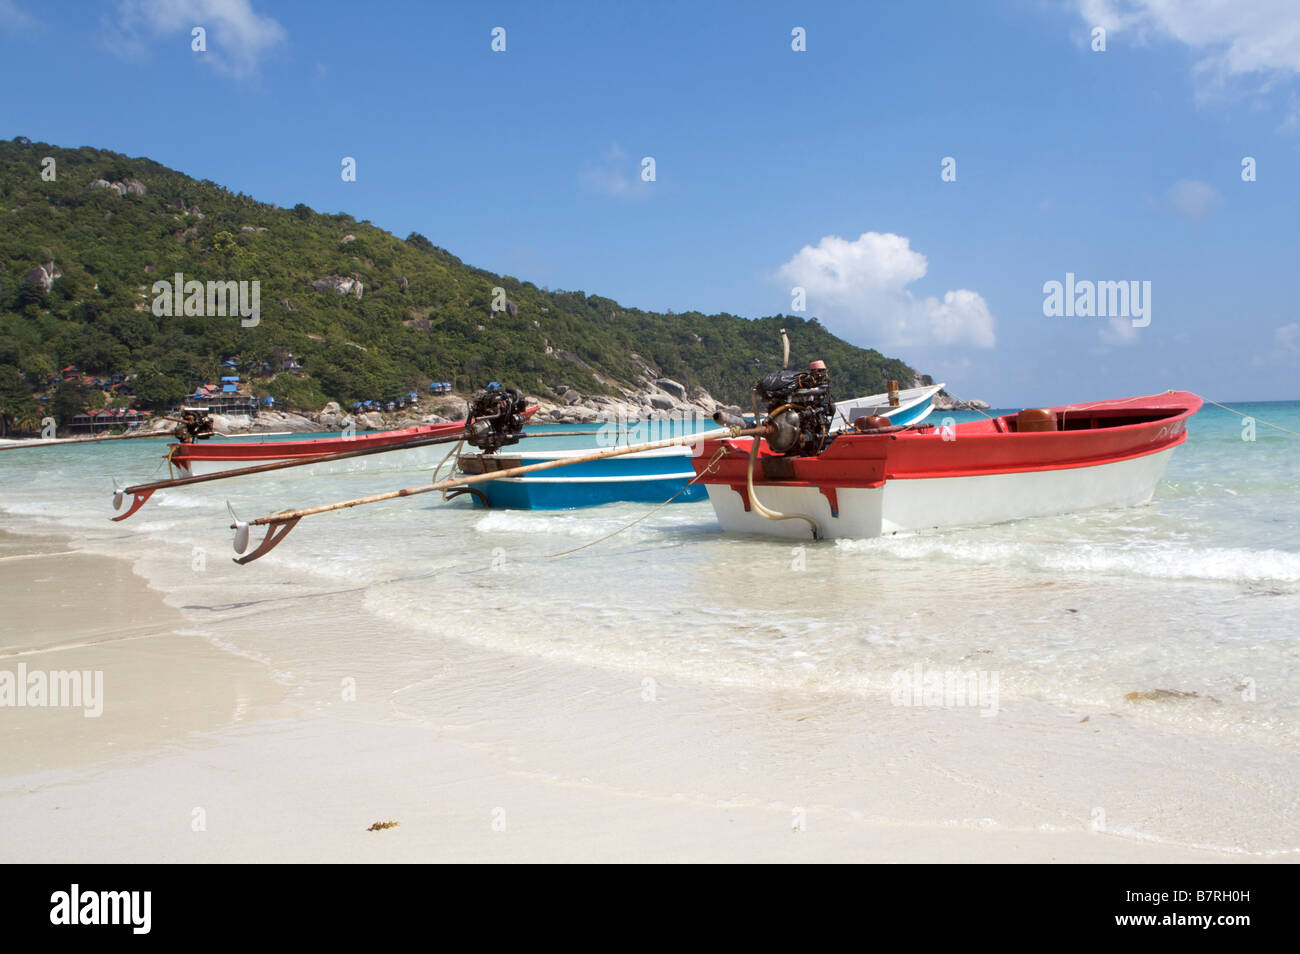 Une longue queue se trouve des bateaux sur les eaux cristallines de la plage de Haad Rin Nok Koh Phangan Thaïlande sous un ciel bleu Banque D'Images